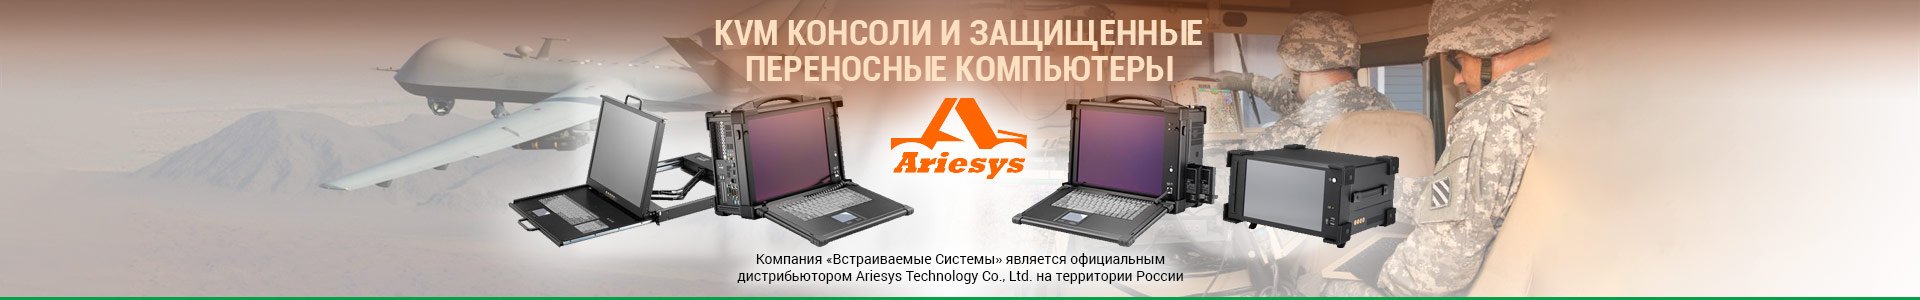 KVM консоли и переносные компьютеры Ariesys